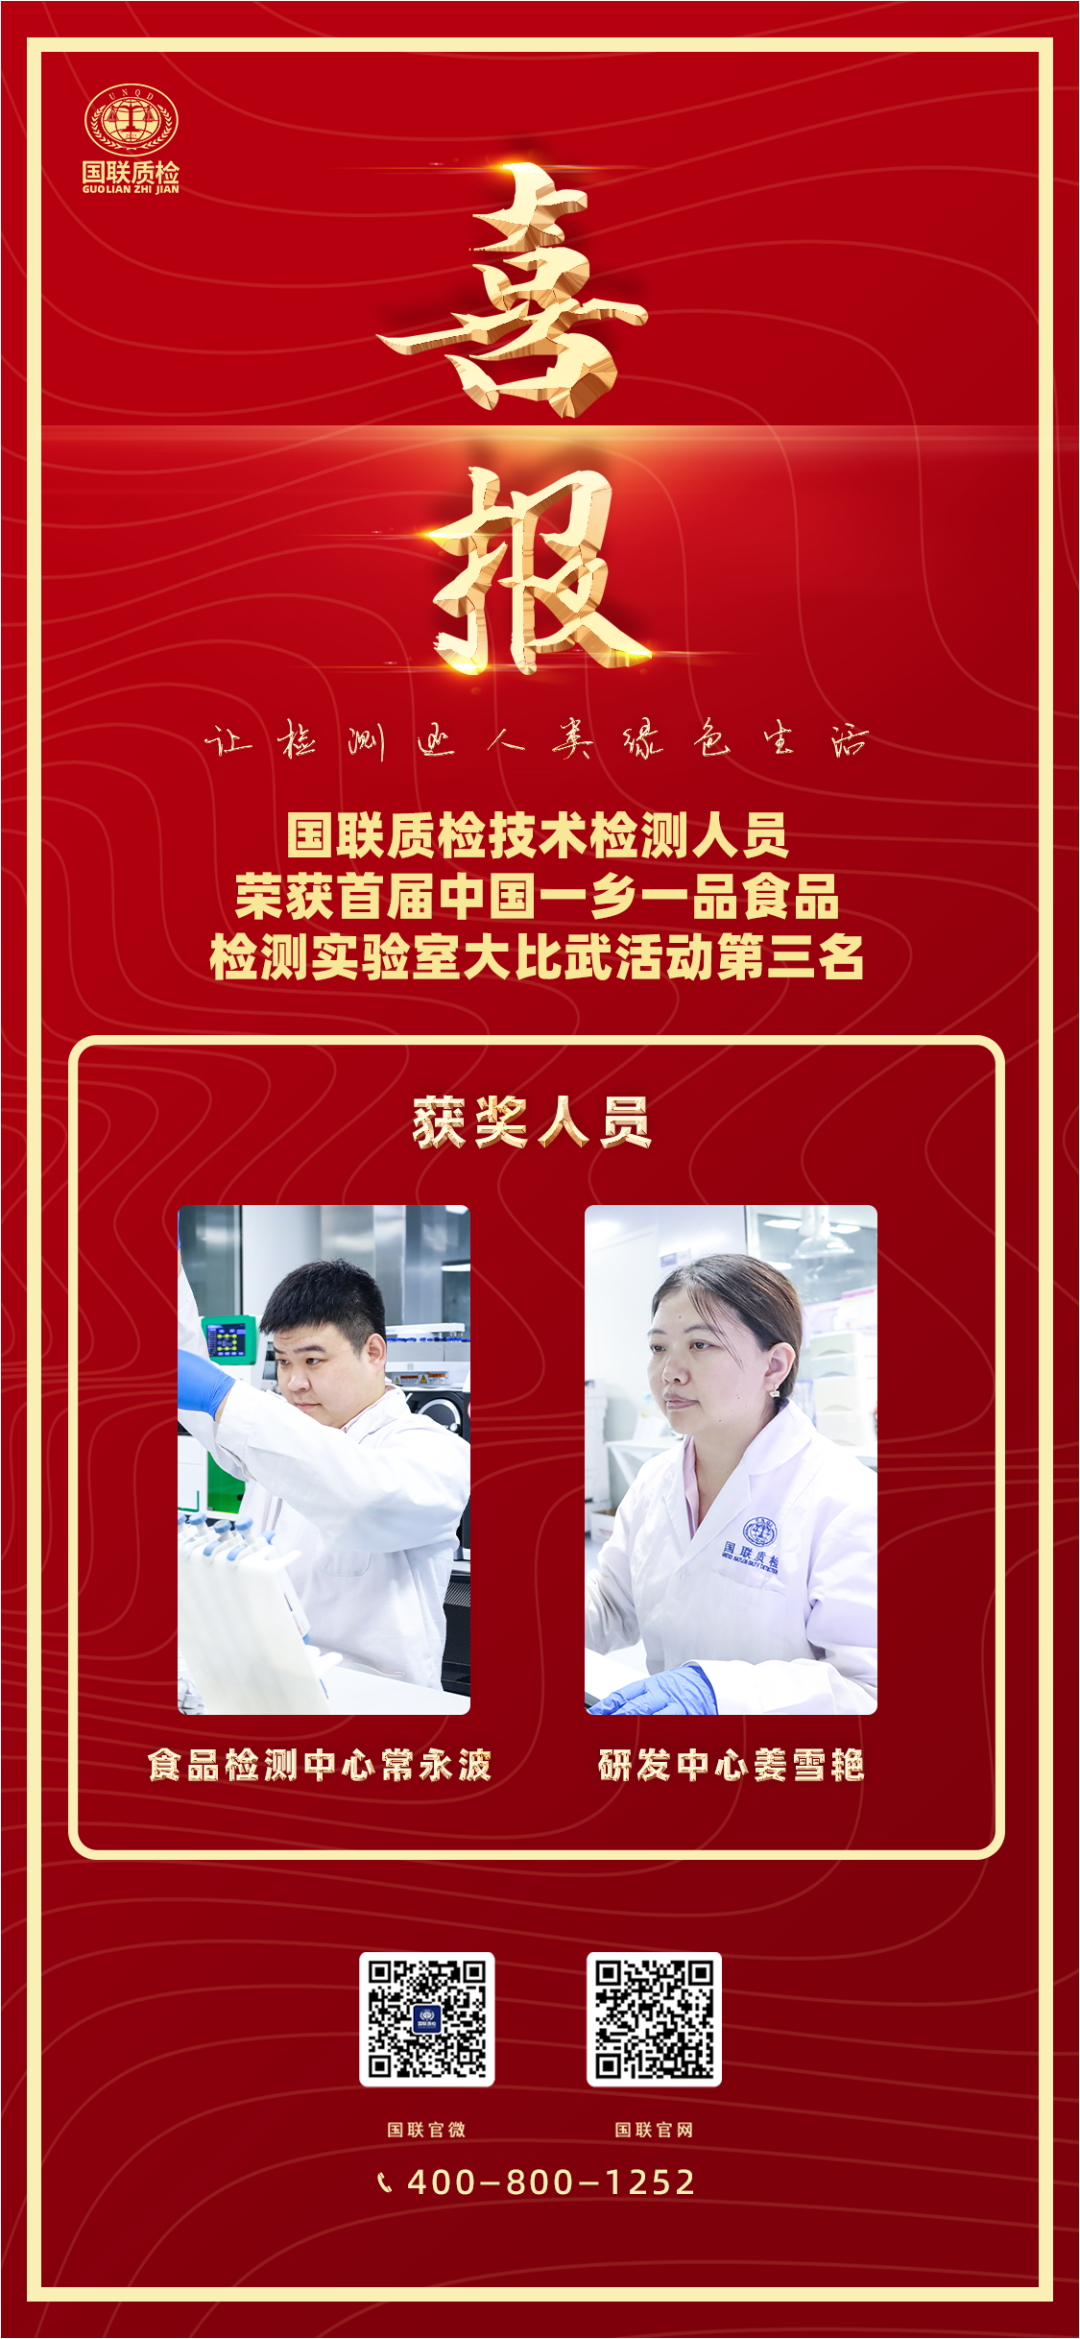 喜报 | 国联质检技术人员荣获首届中国一乡一品食品检测实验室大比武第三名